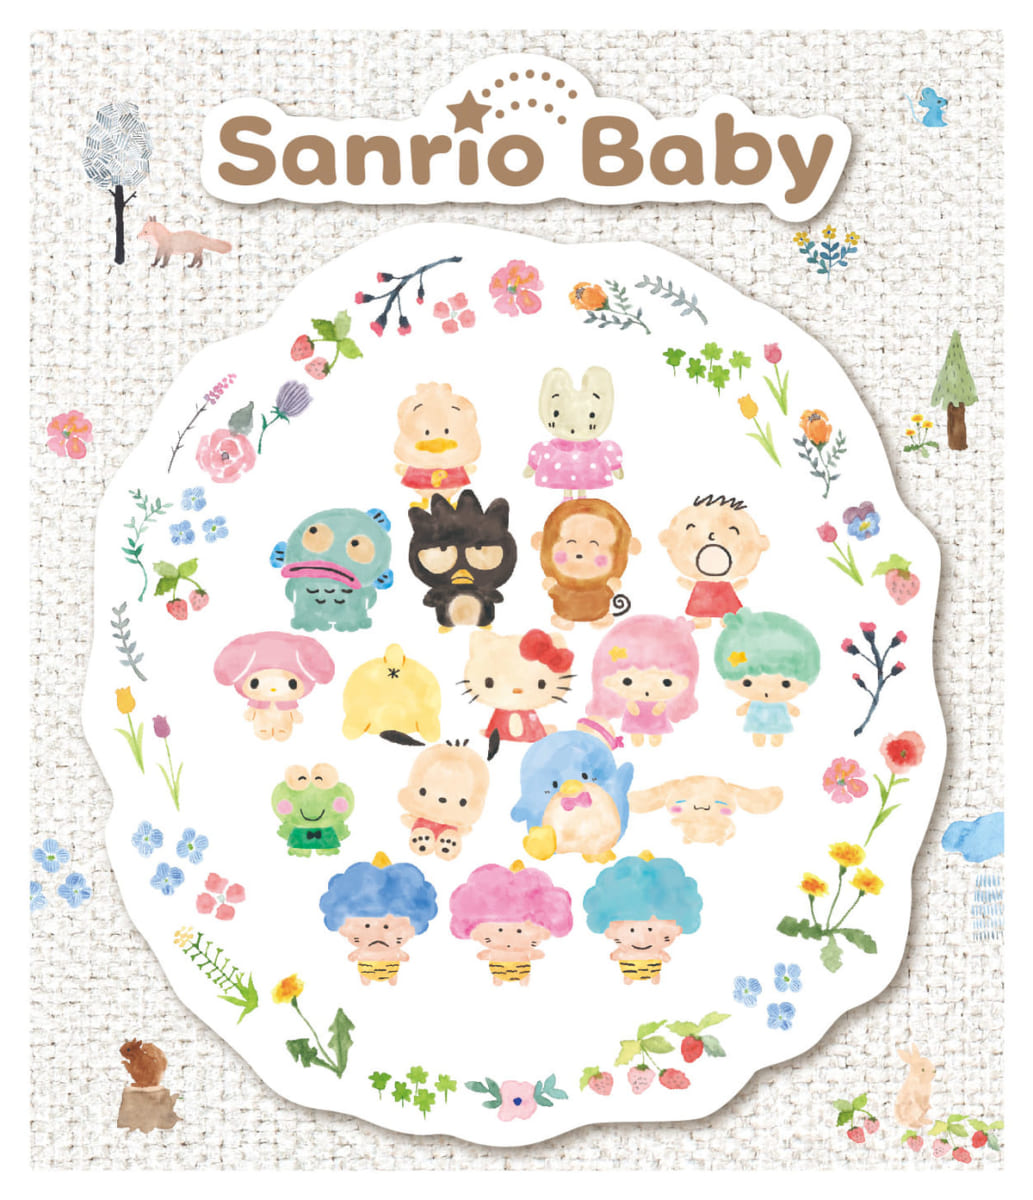 Sanrio Babyブランドコンセプト